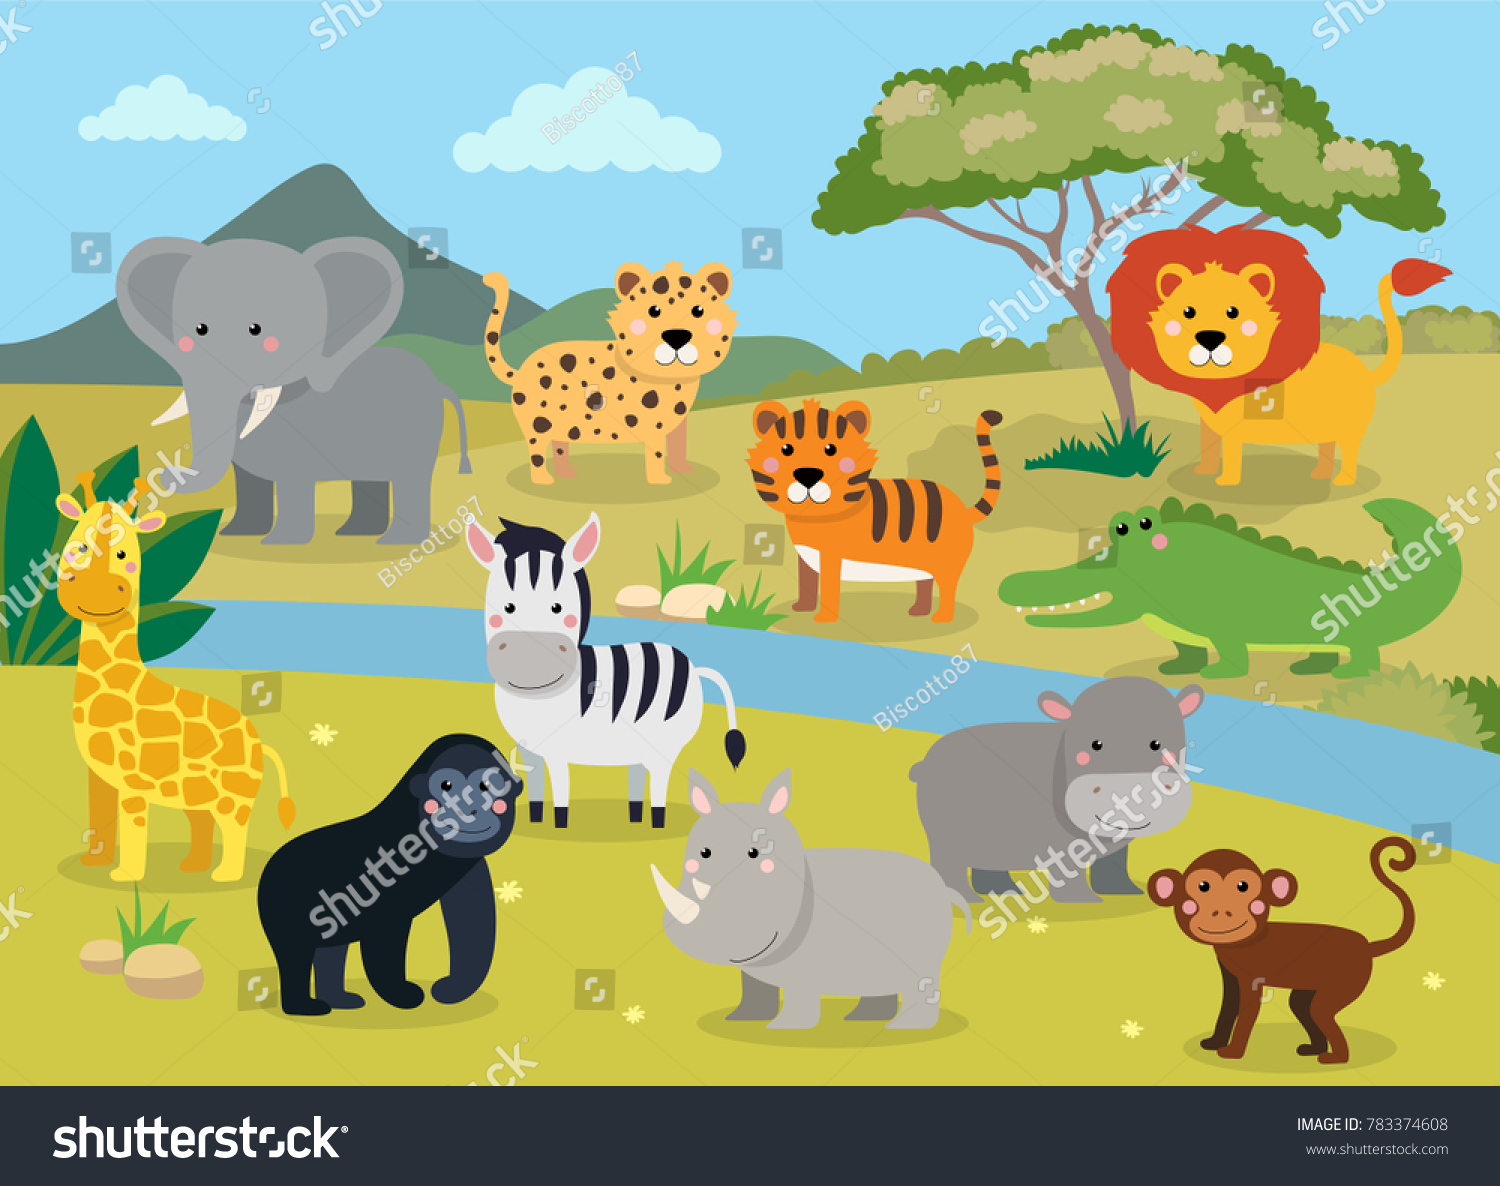 風景を持つ野生の動物 ワニ サイ 象 キリン ヒョウ トラ ゼブラ 猿 ライオン カボ 猿の可愛い漫画のイラスト のイラスト素材